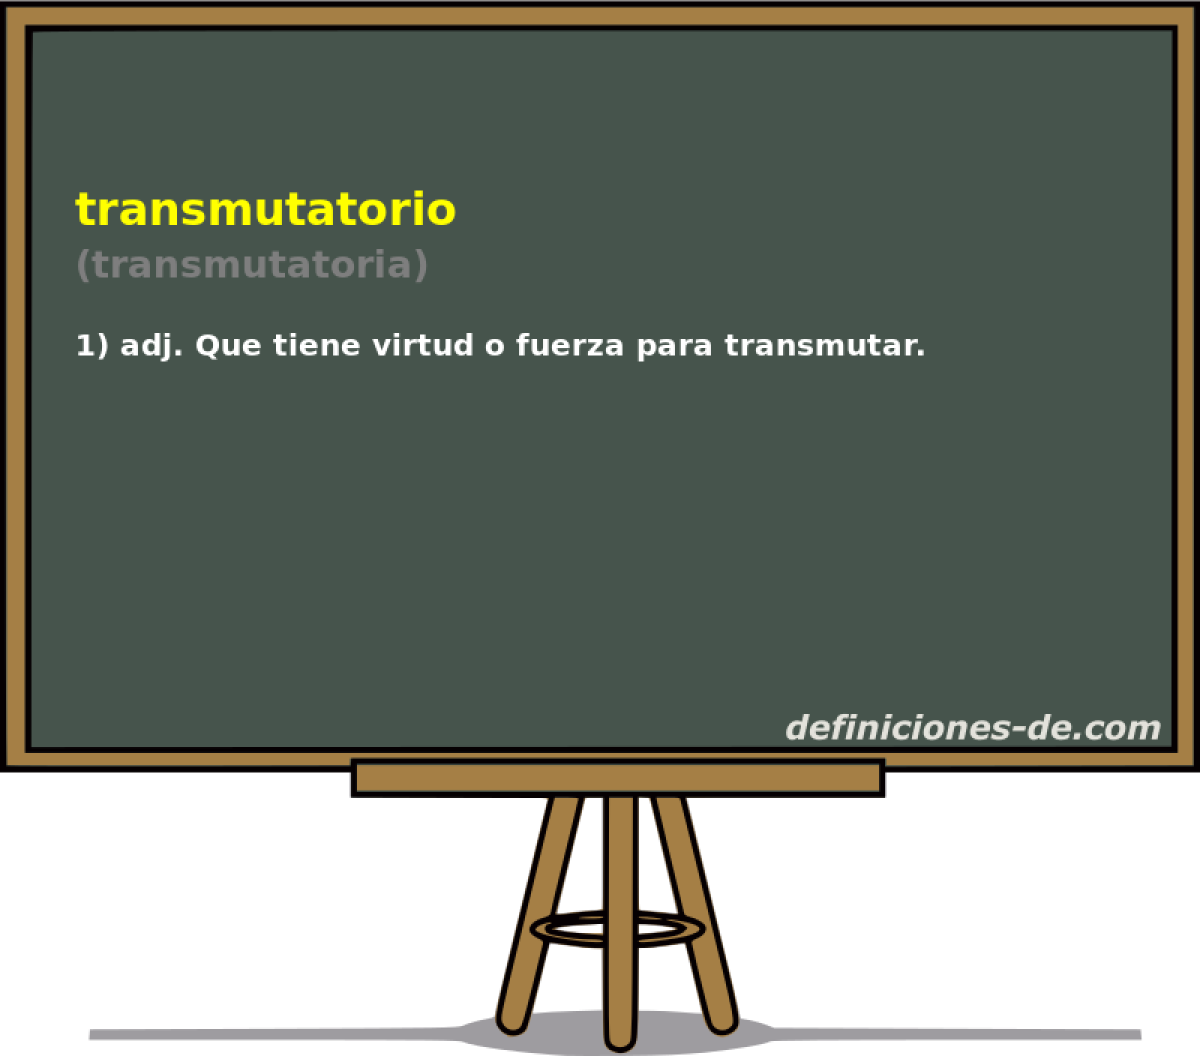 transmutatorio (transmutatoria)